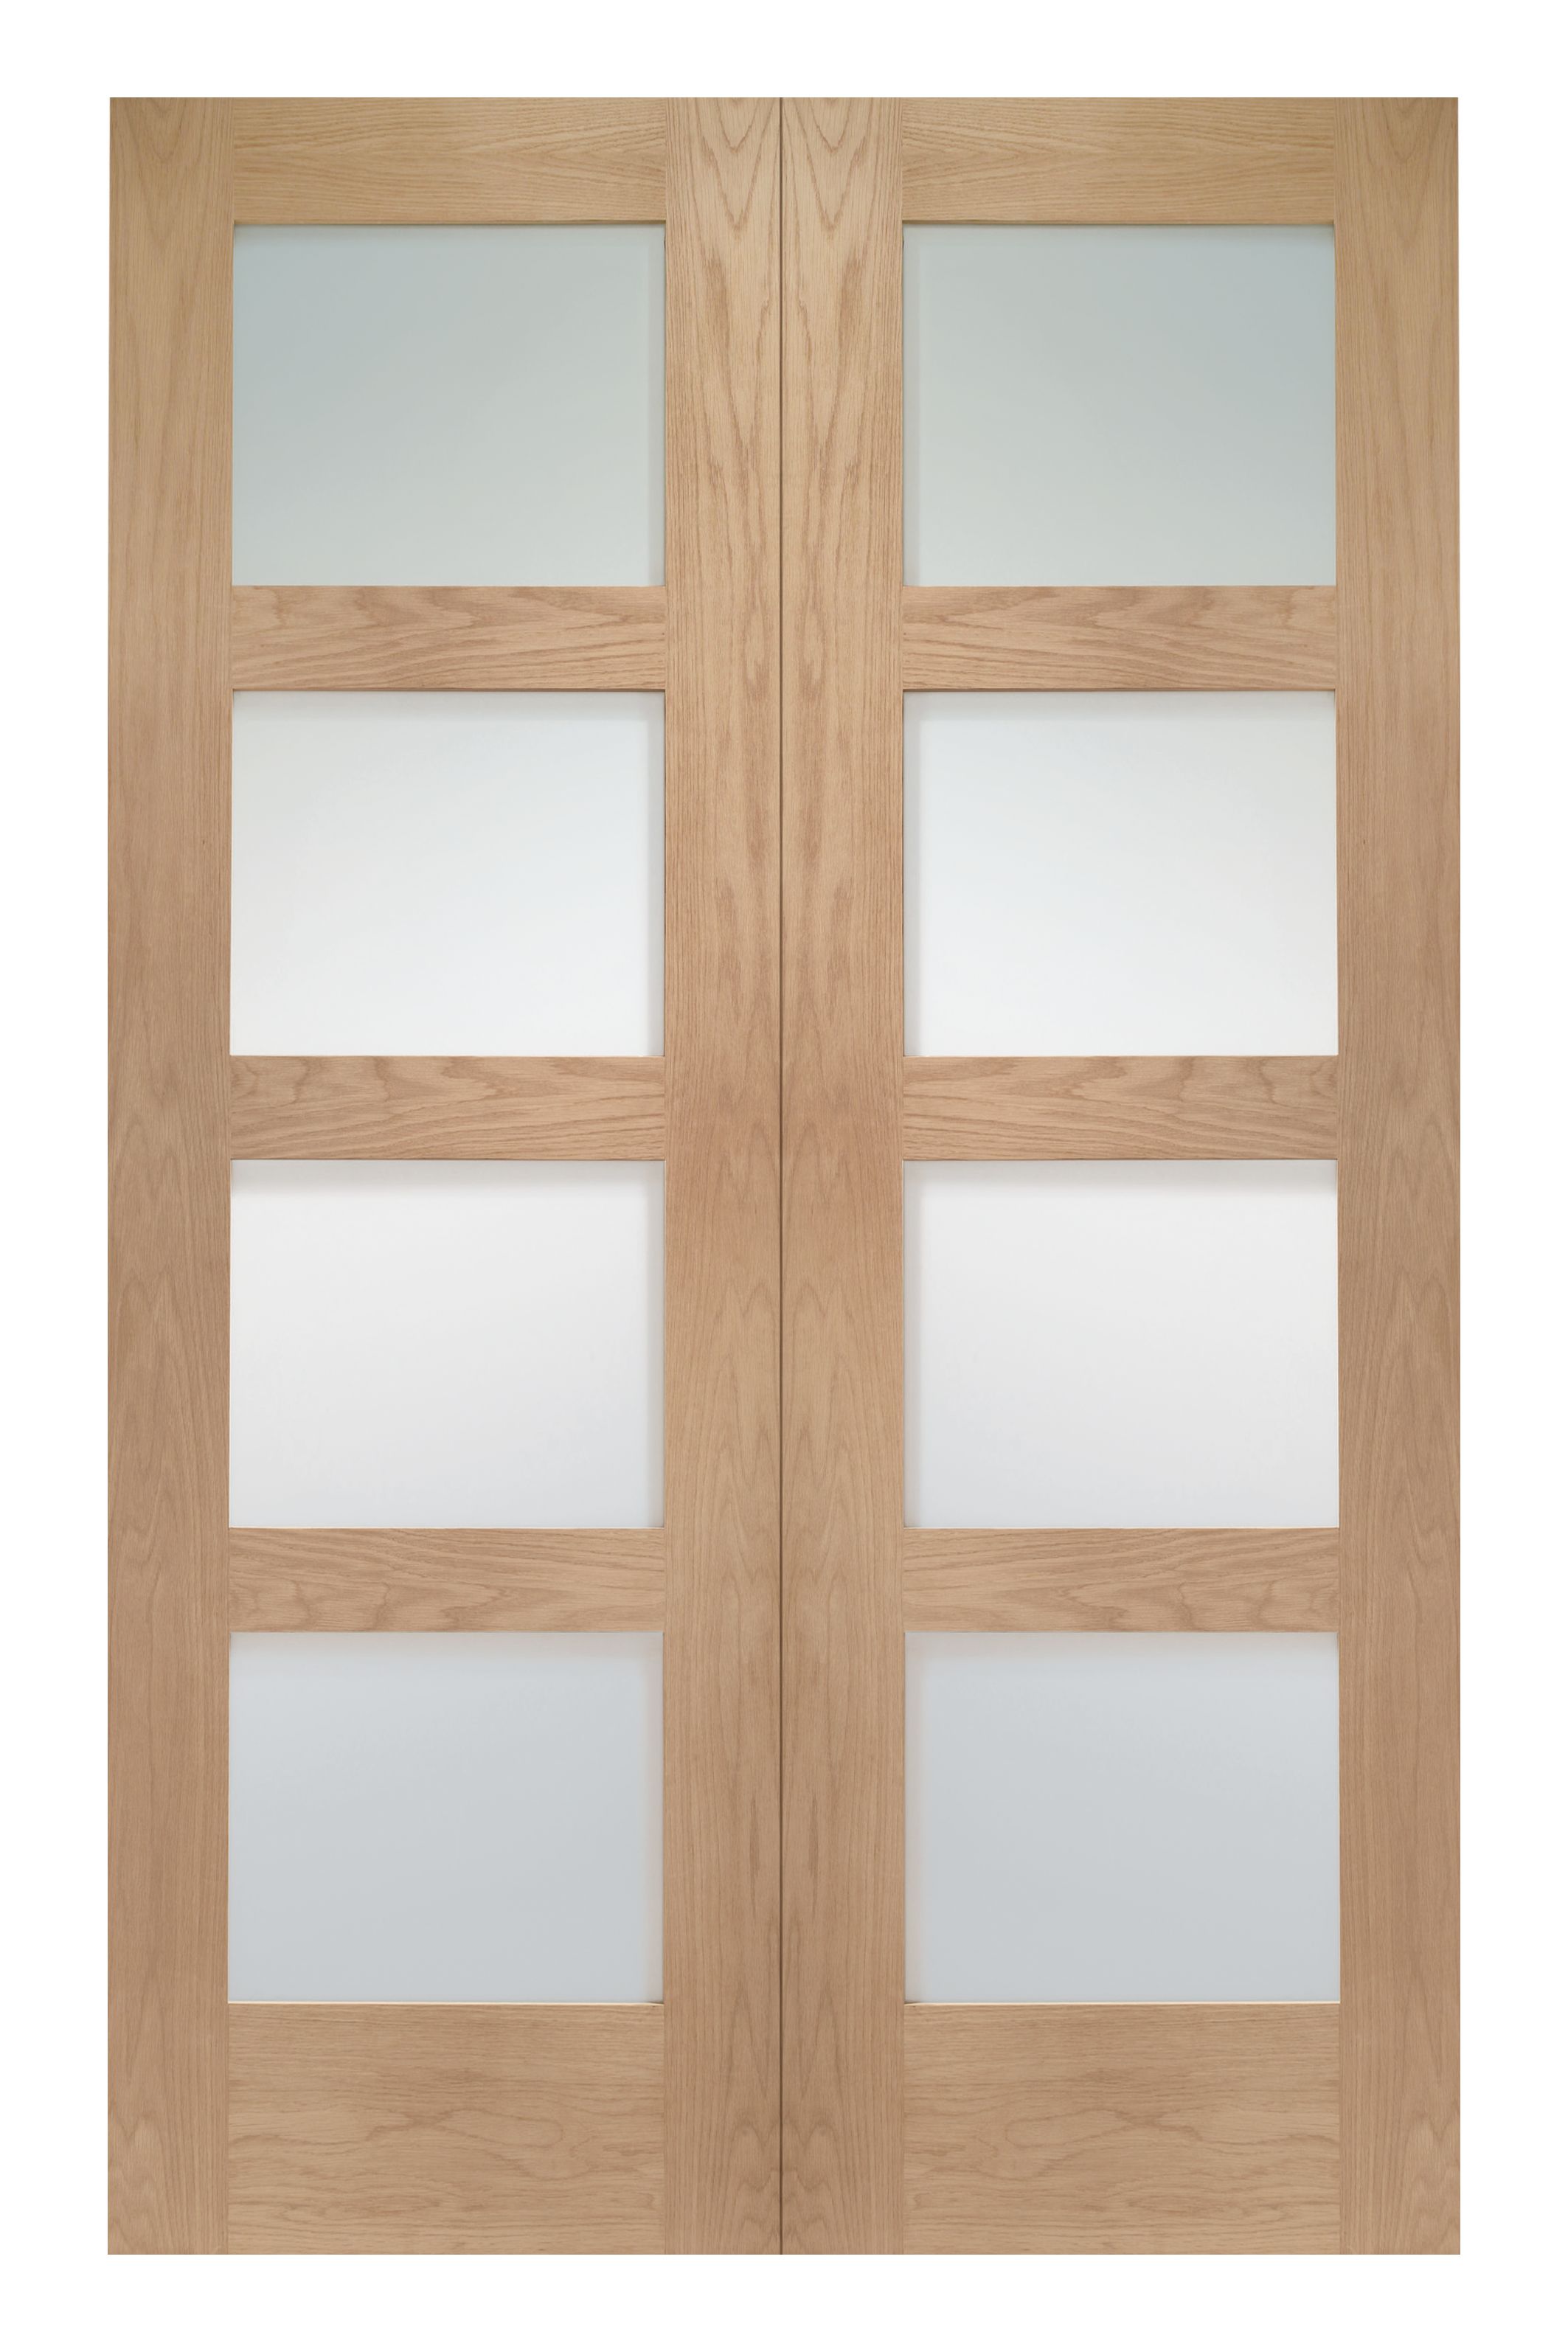 Image of Wickes Marlow Fully Glazed Oak 4 Panel Rebated Internal Door Pair - 1981 x 1524mm